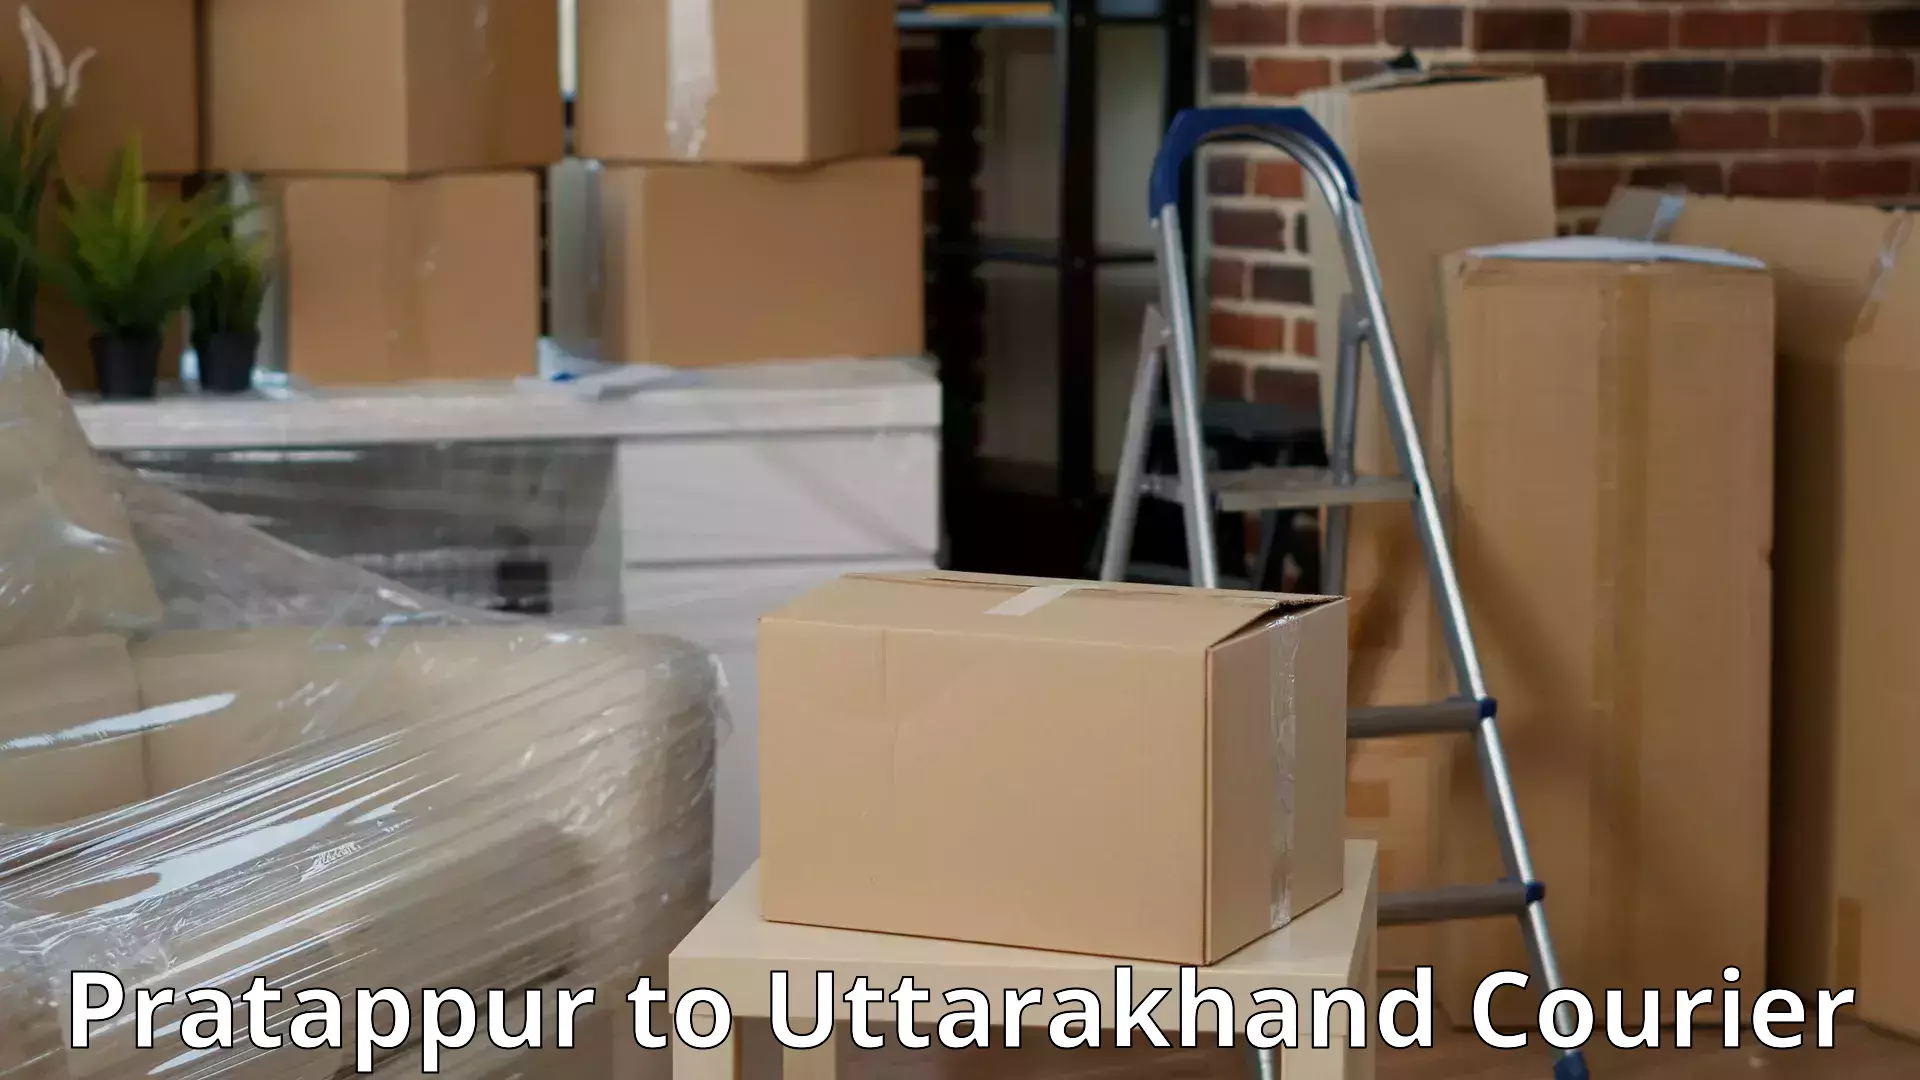 Moving and storage services in Pratappur to Kotdwara